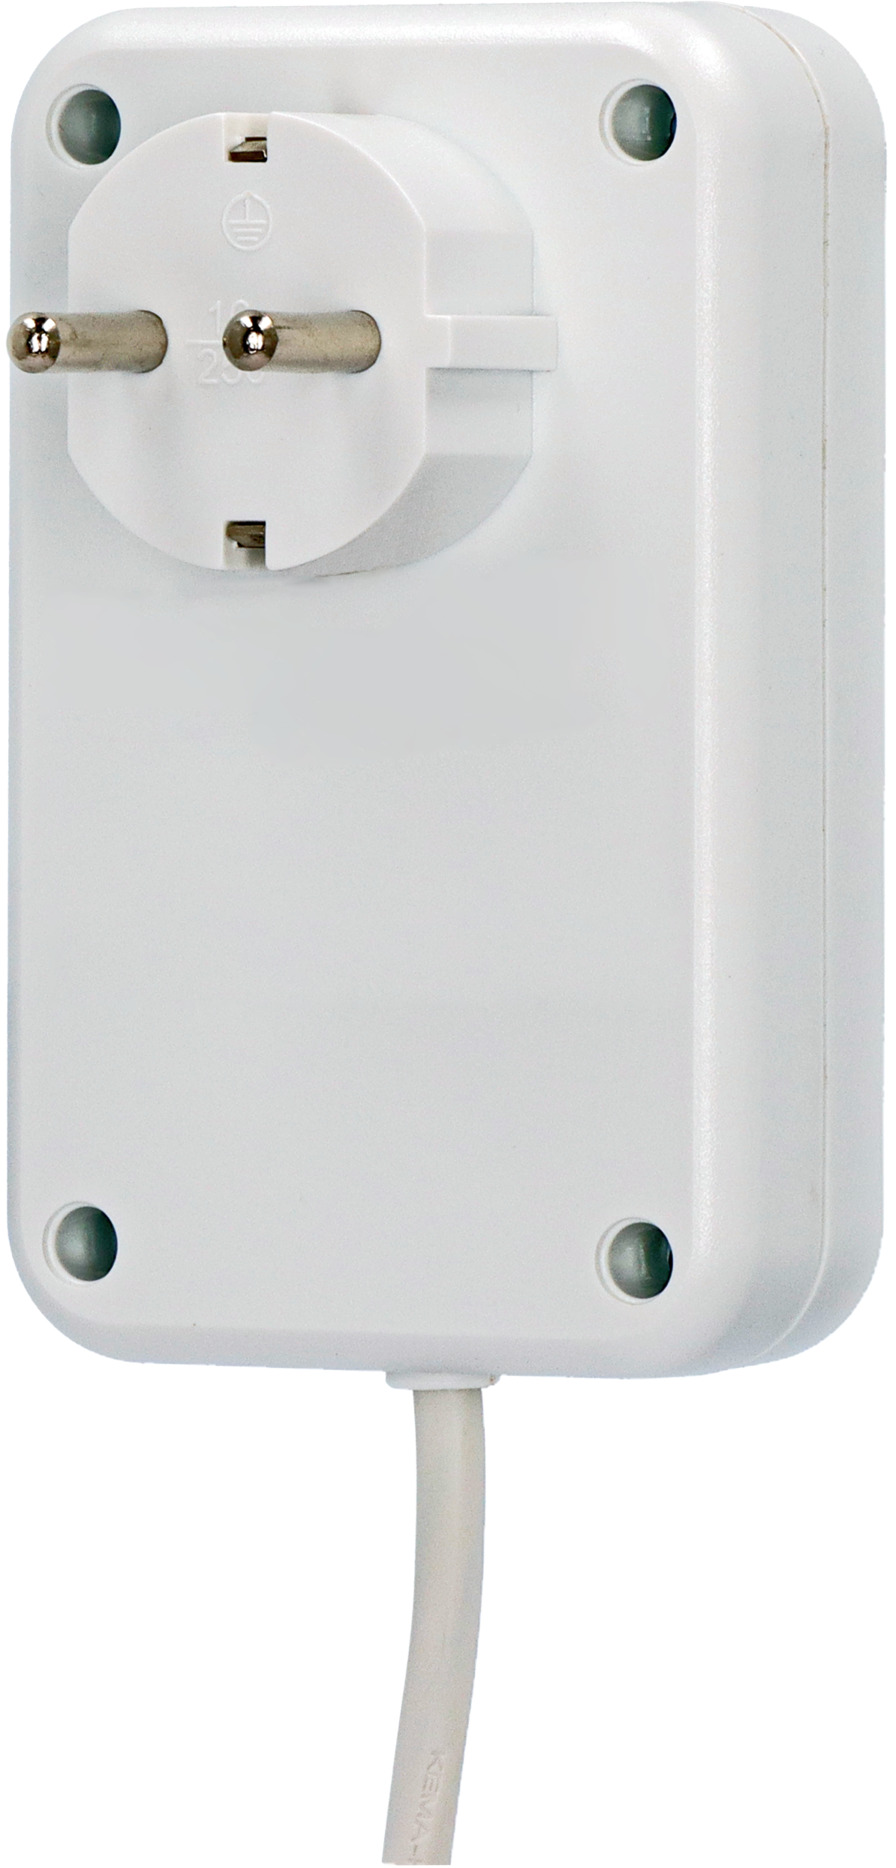 Eco Line Comfort Switch Adapter EL CSA 1 beleuchteter Hand-/Fußschalter